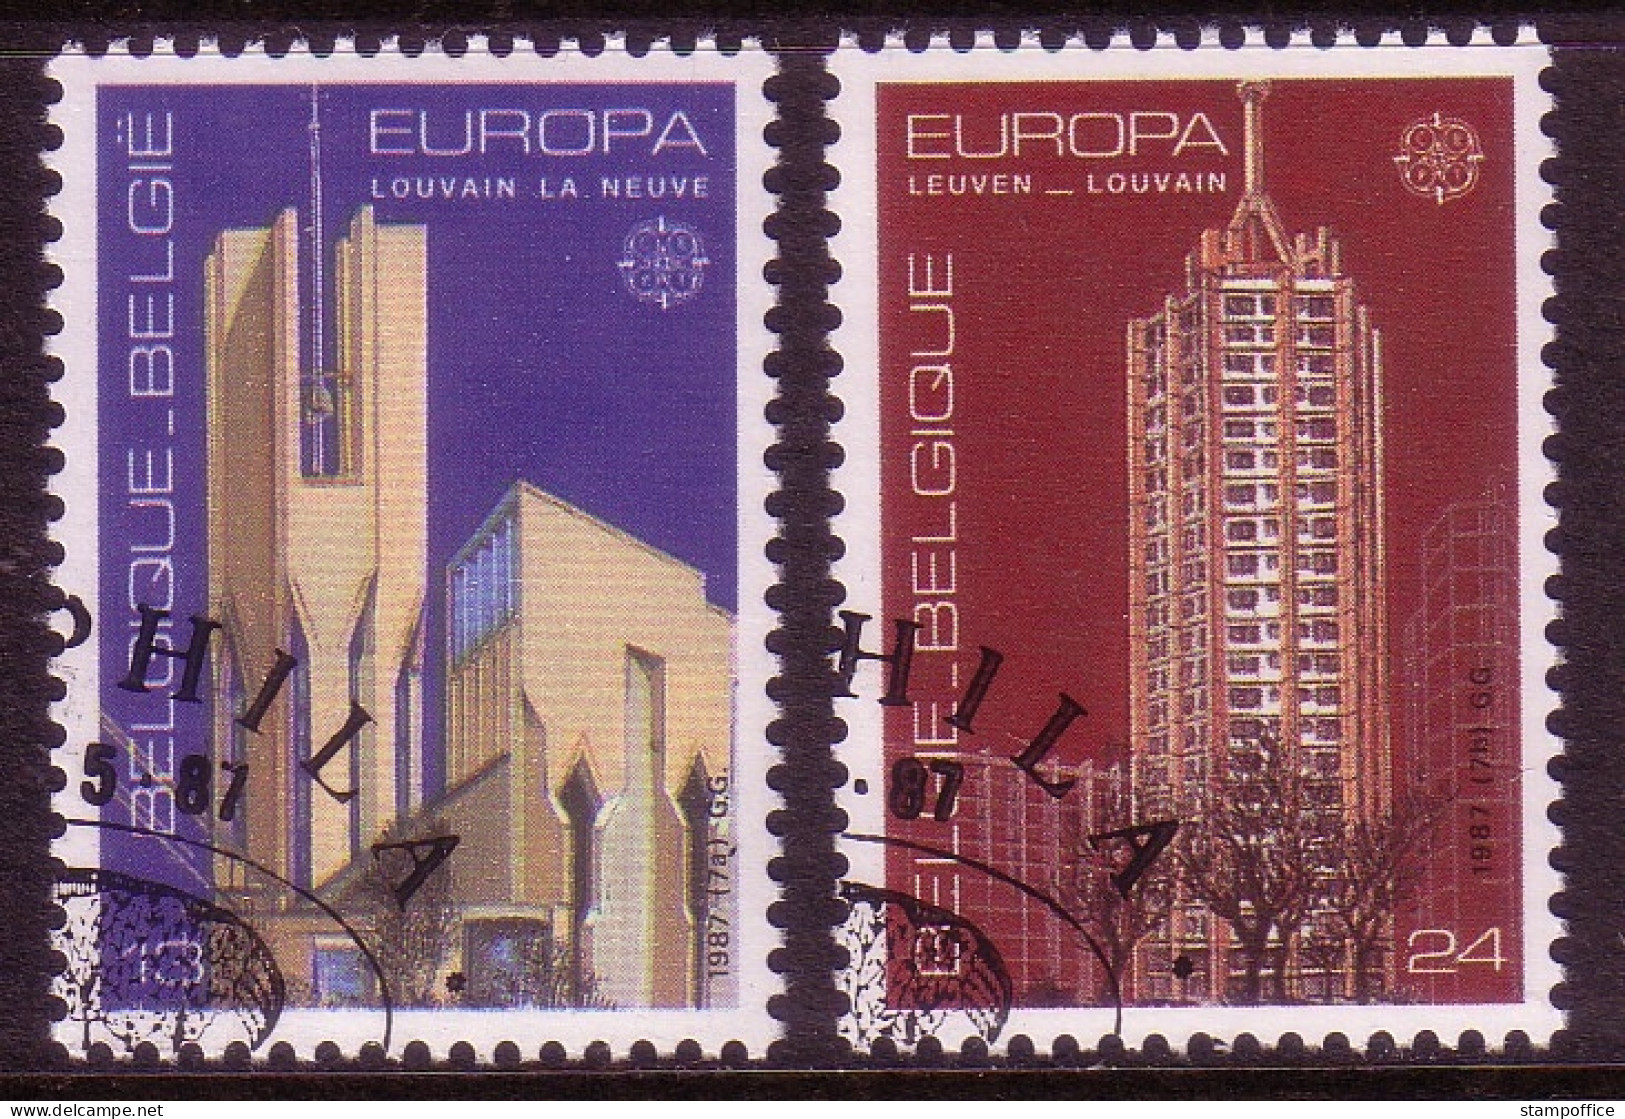 BELGIEN MI-NR. 2303-2304 O EUROPA 1987 - MODERNE ARCHITEKTUR - 1987